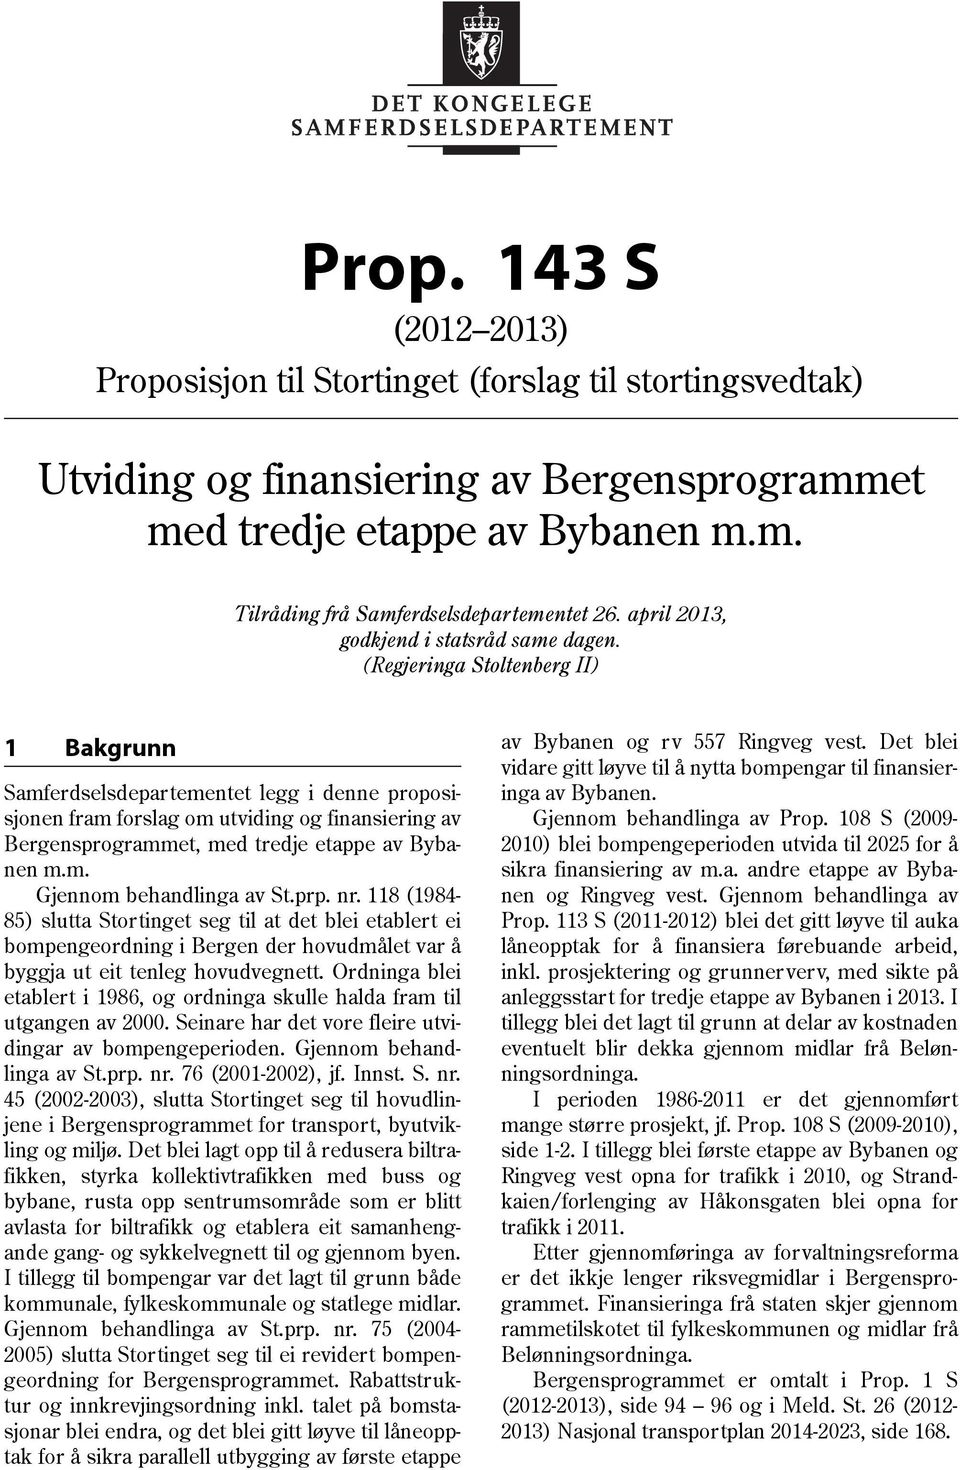 (Regjeringa Stoltenberg II) 1 Bakgrunn Samferdselsdepartementet legg i denne proposisjonen fram forslag om utviding og finansiering av Bergensprogrammet, med tredje etappe av Bybanen m.m. Gjennom behandlinga av St.